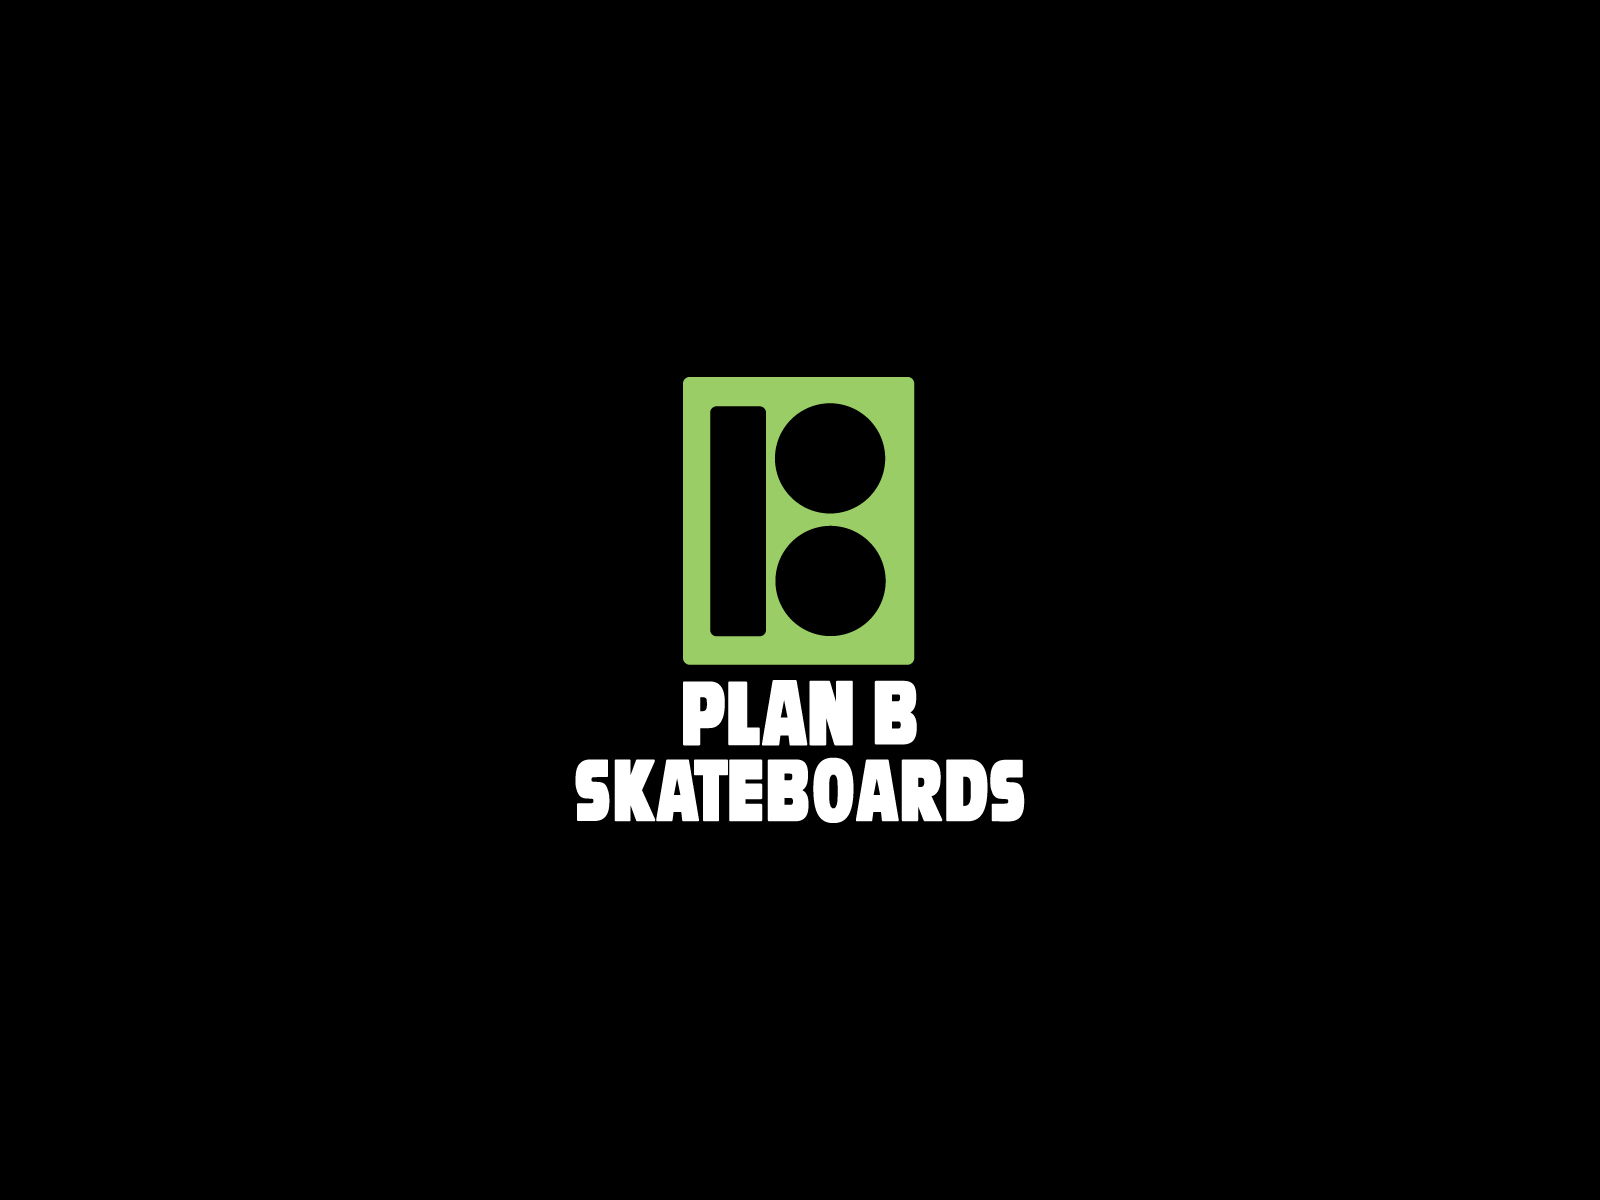 Skateboarding wallpapers skateboard wallpapers sk8 walls Find